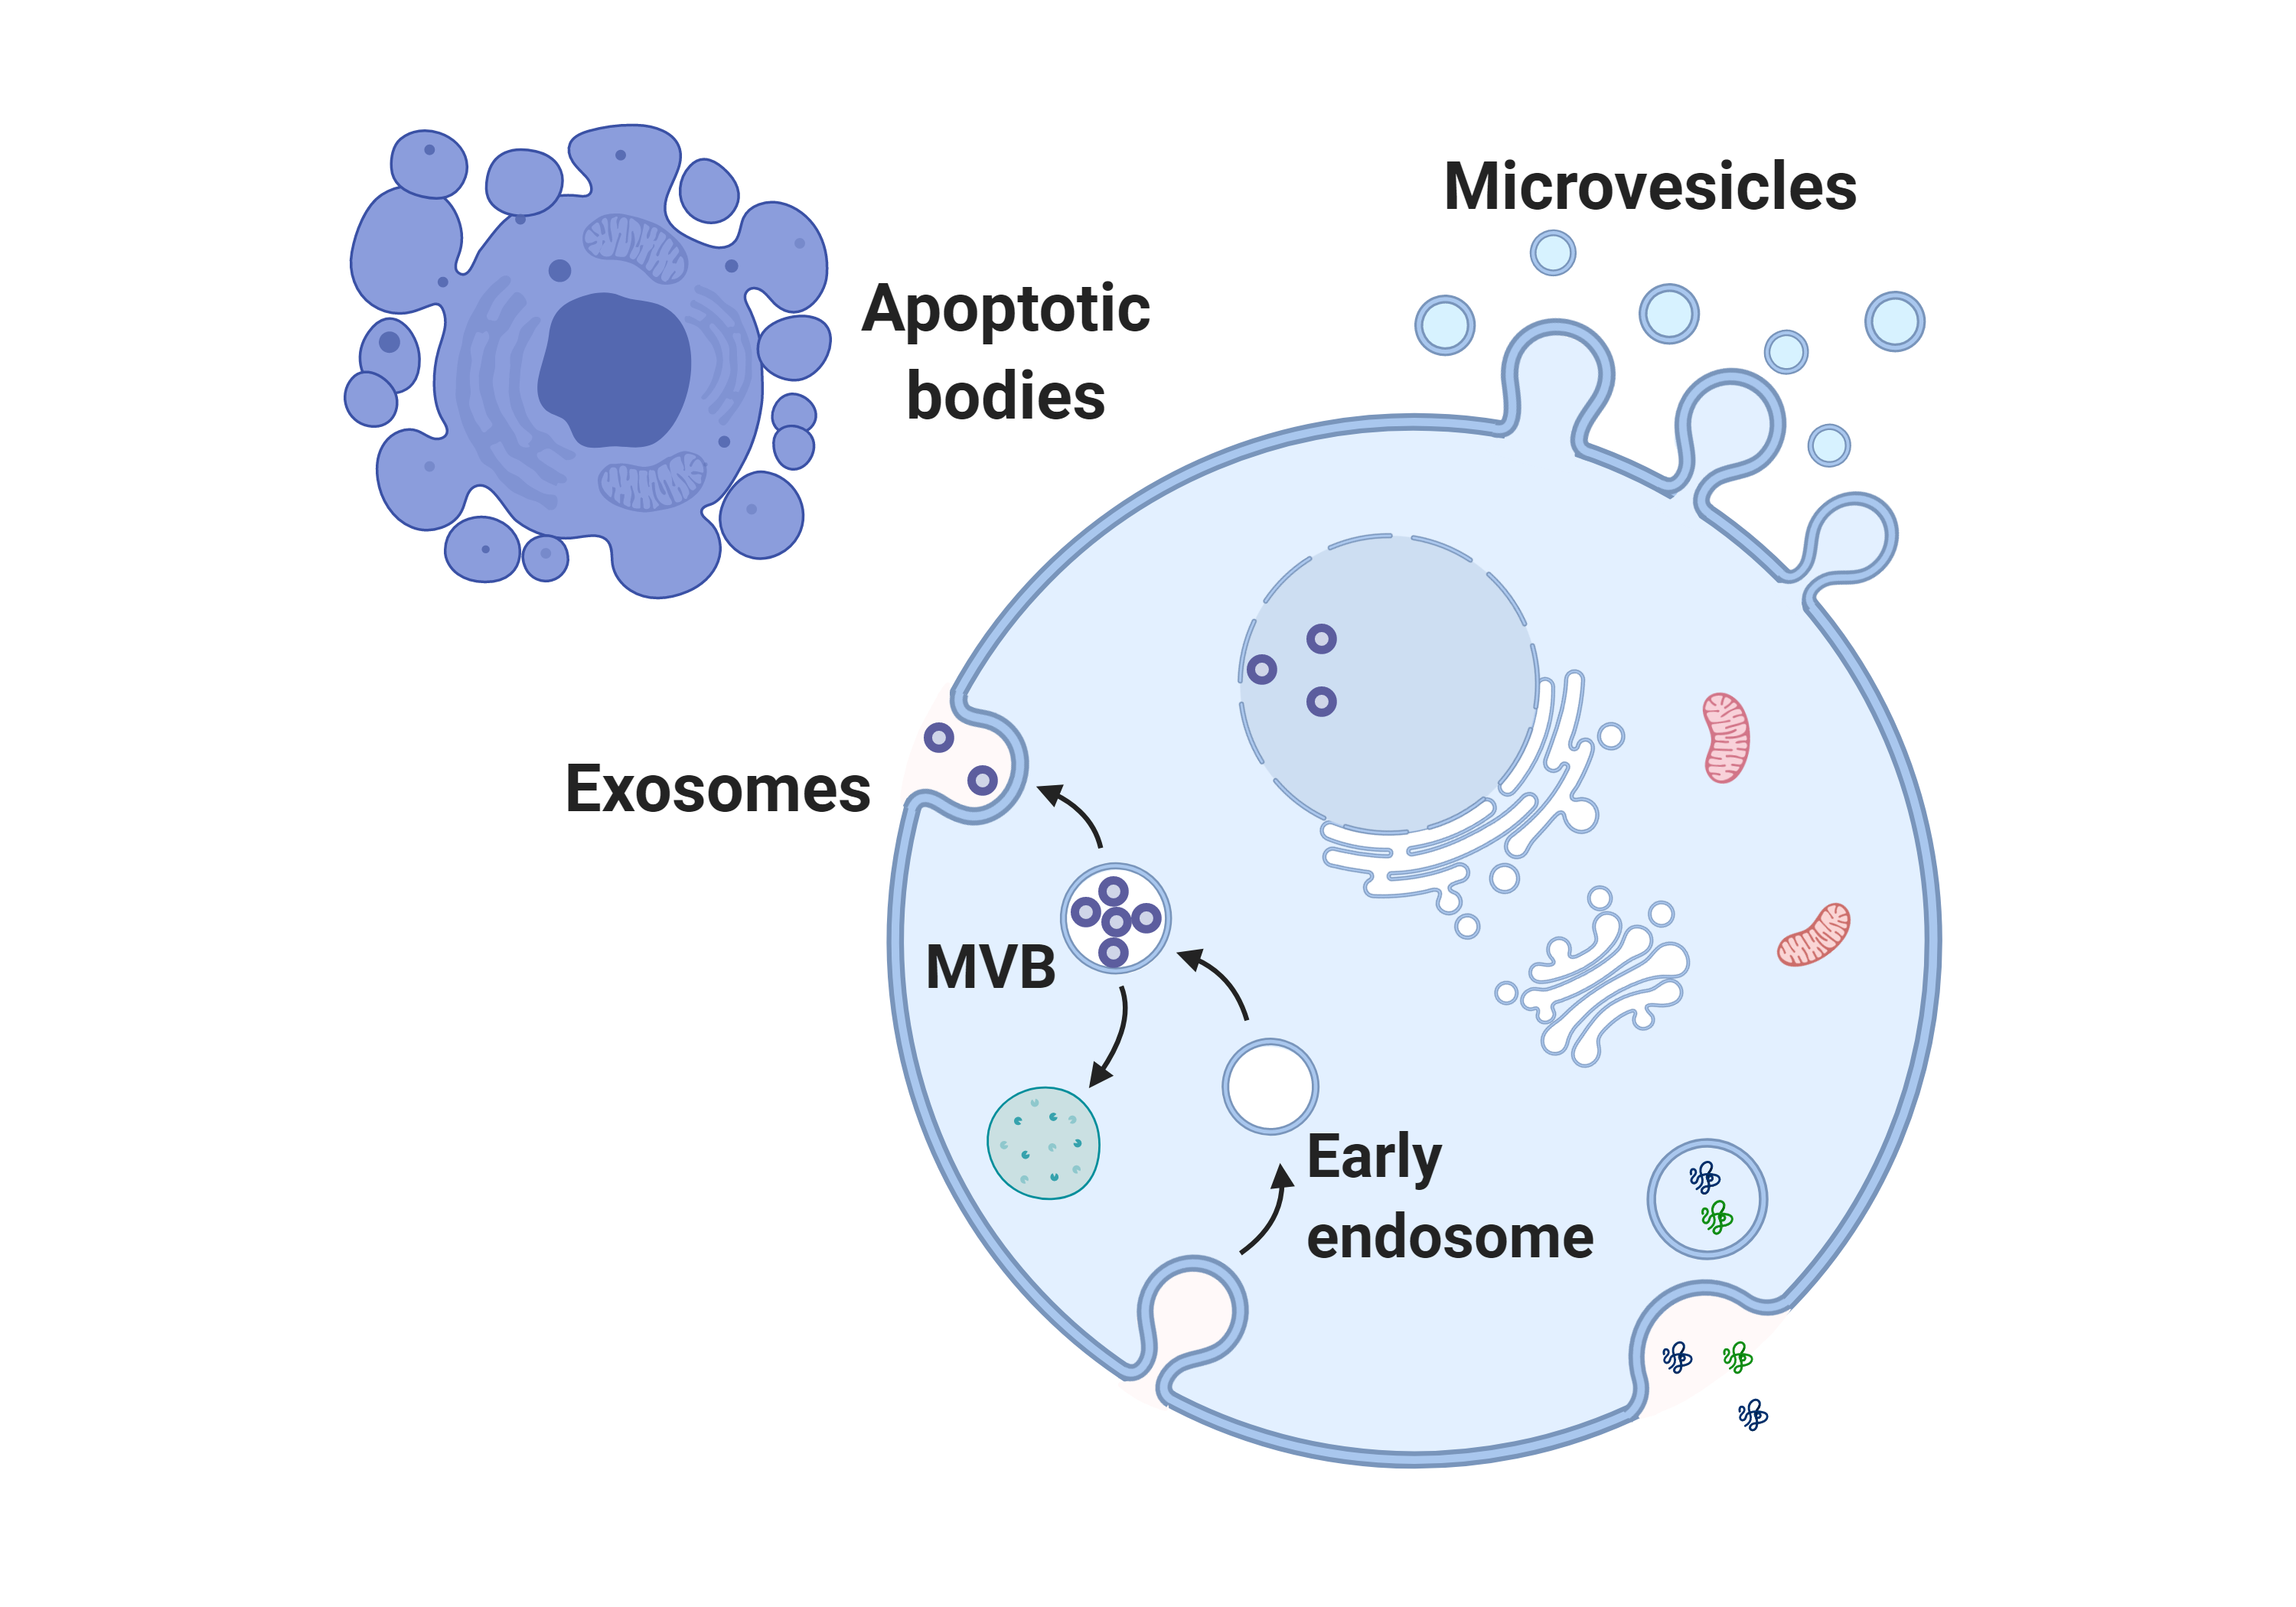 Extracellular vesicle (EV) analysis